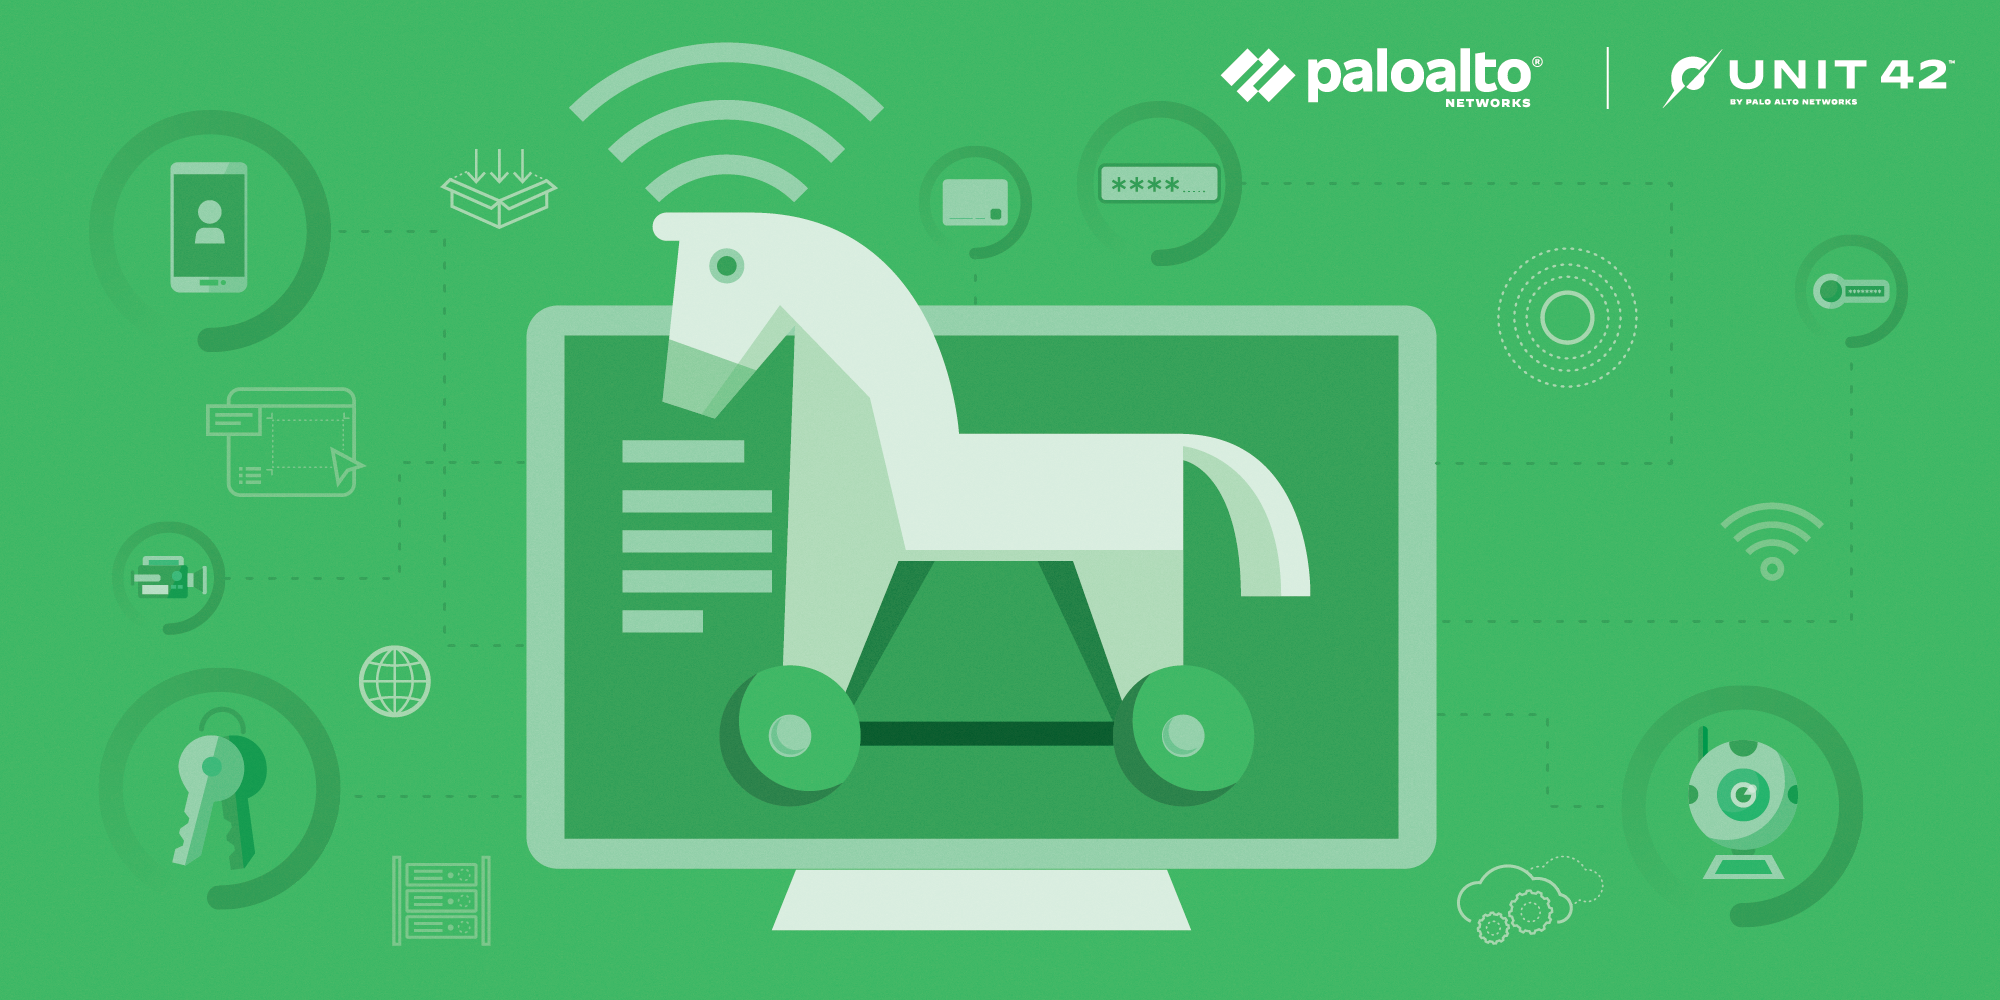 分发 VenomRAT 的假 PoC 的图示。 计算机屏幕上的特洛伊木马位于绿色背景上。 帕洛阿尔托网络标志。 42 单元标志。